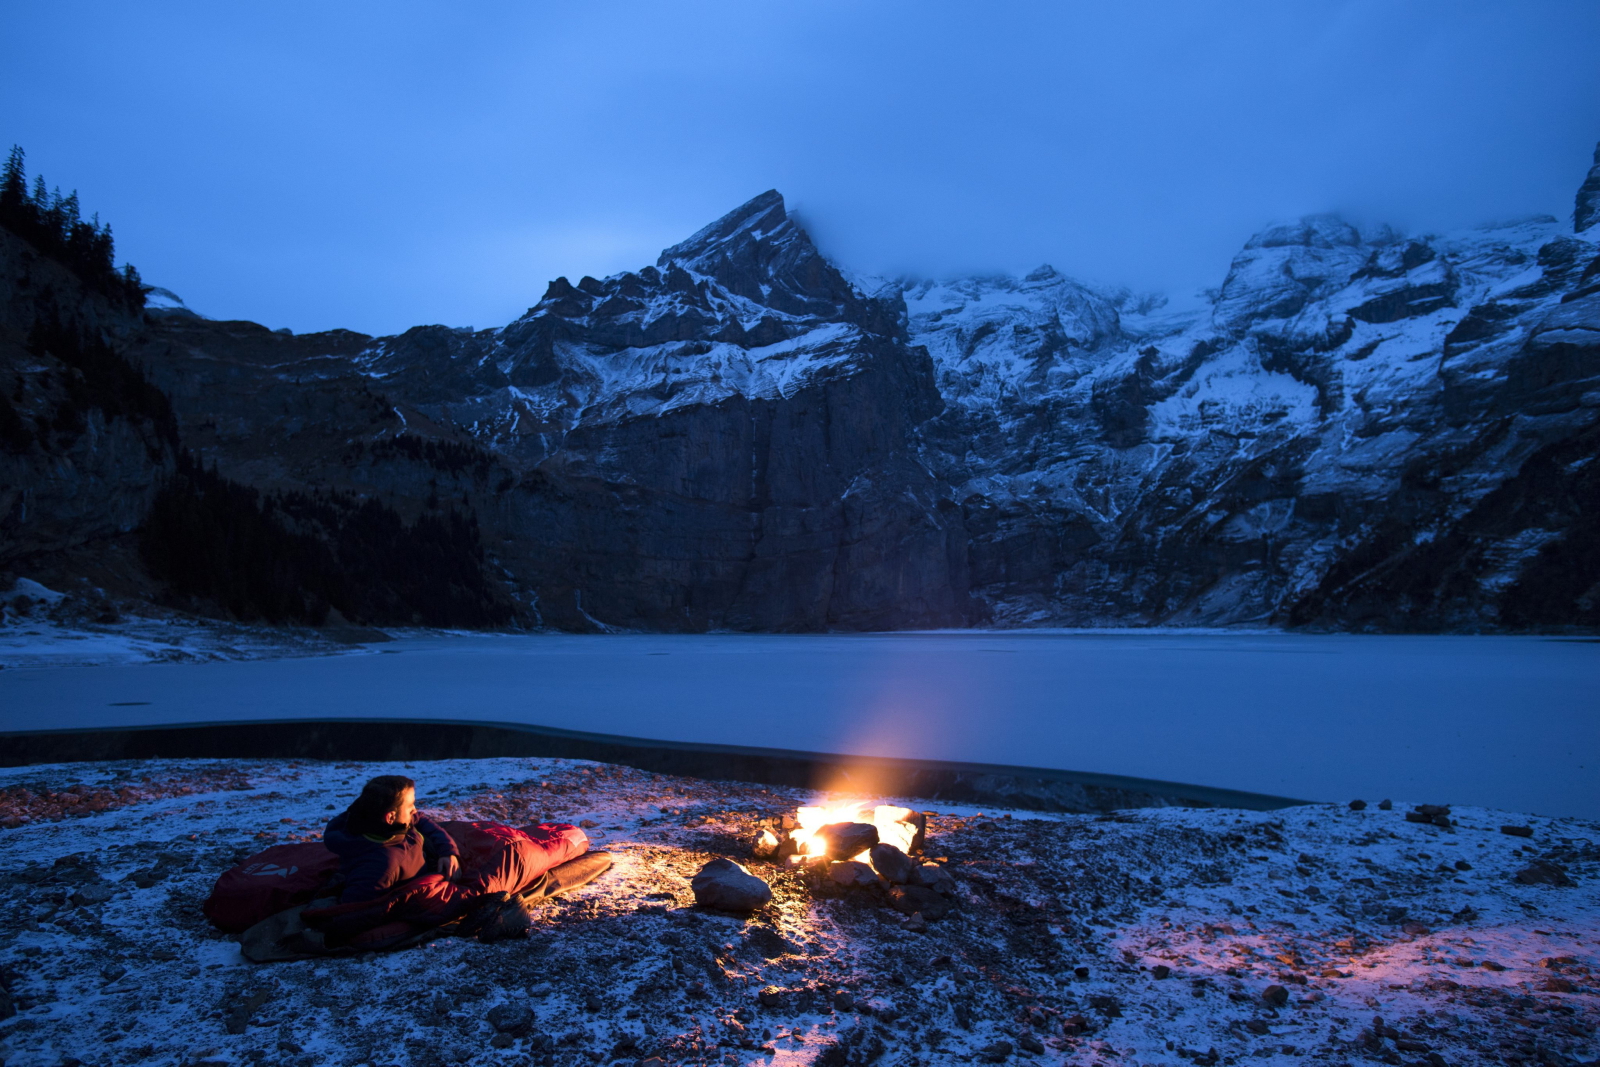 Mężczyzna w śpiworze patrzy na ognisko naprzeciw zamarzniętego ogniska Oeschinensee, Szwajcaria.